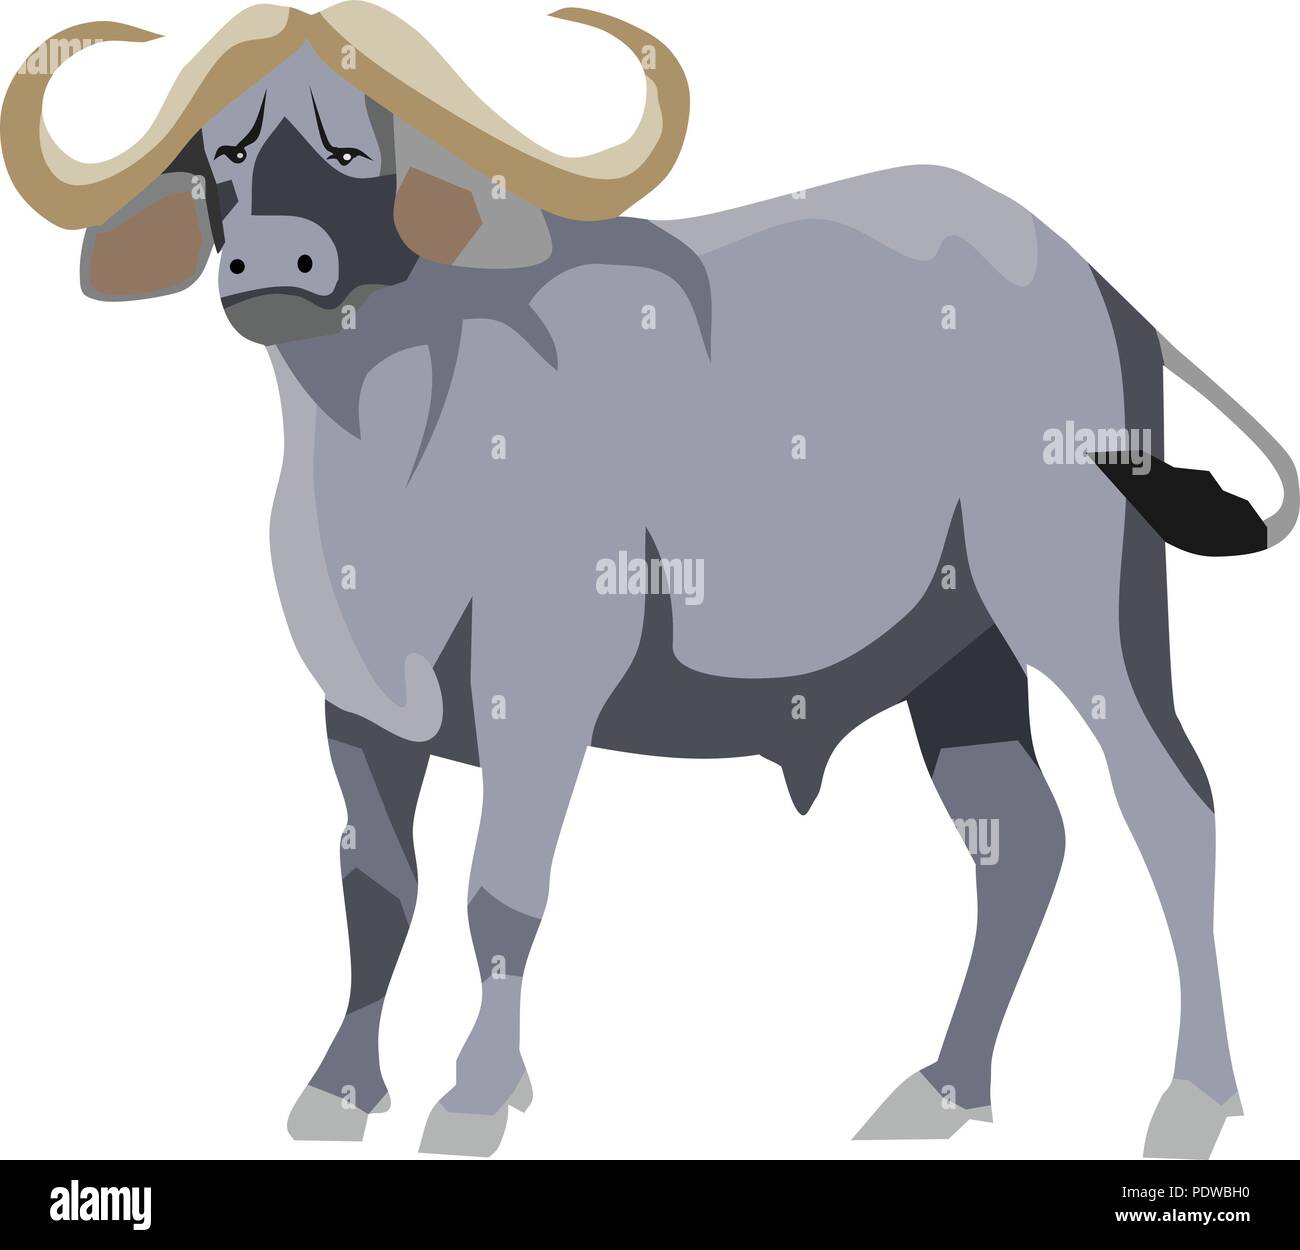 Ox or Buffalo Mammal Animal Stock Vector